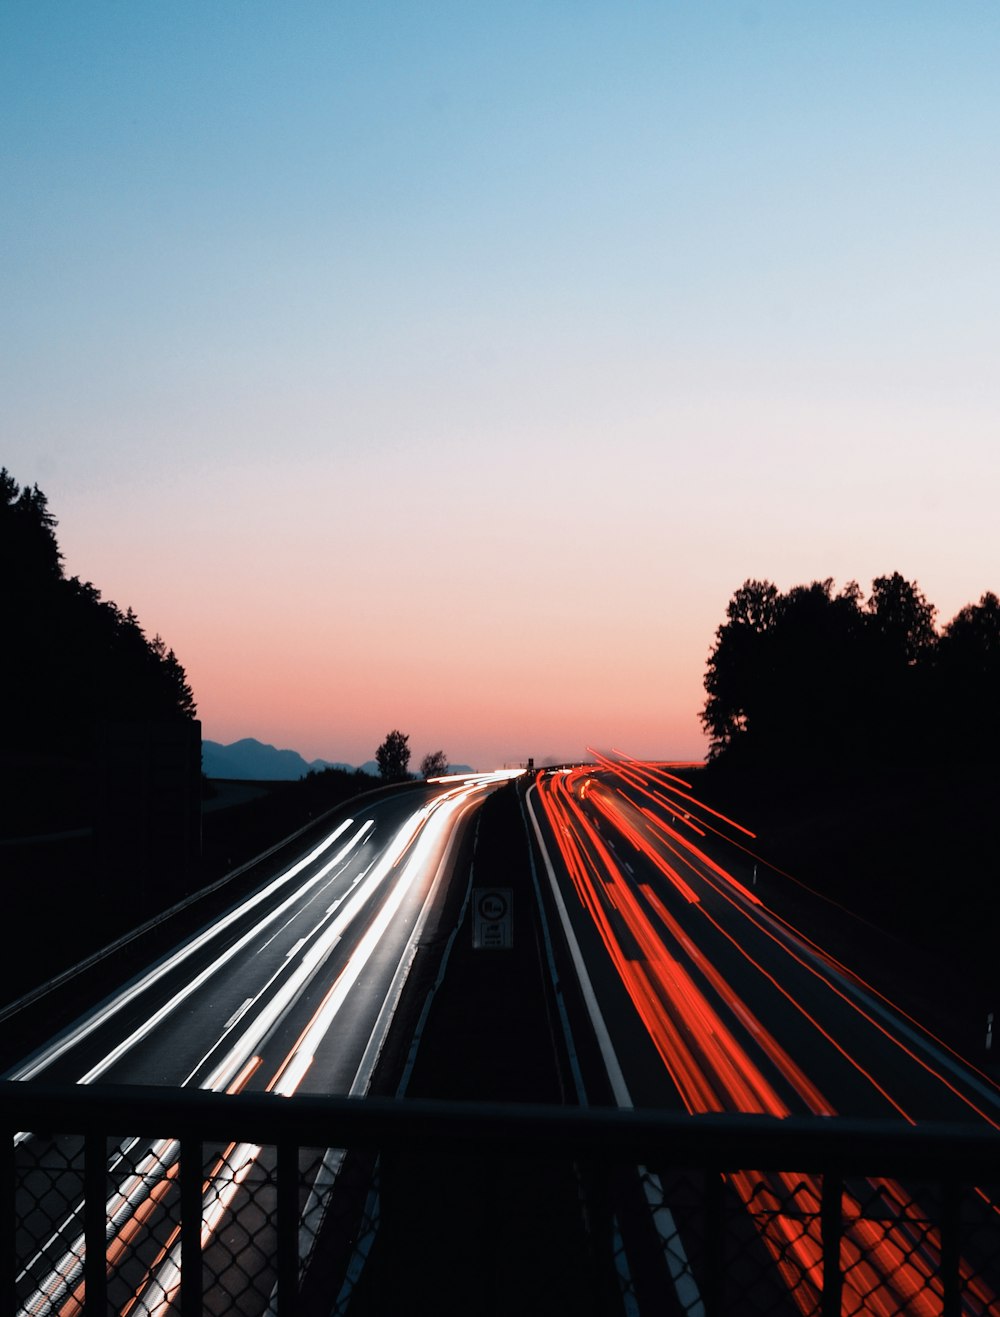 photographie en accéléré de voitures sur route au coucher du soleil